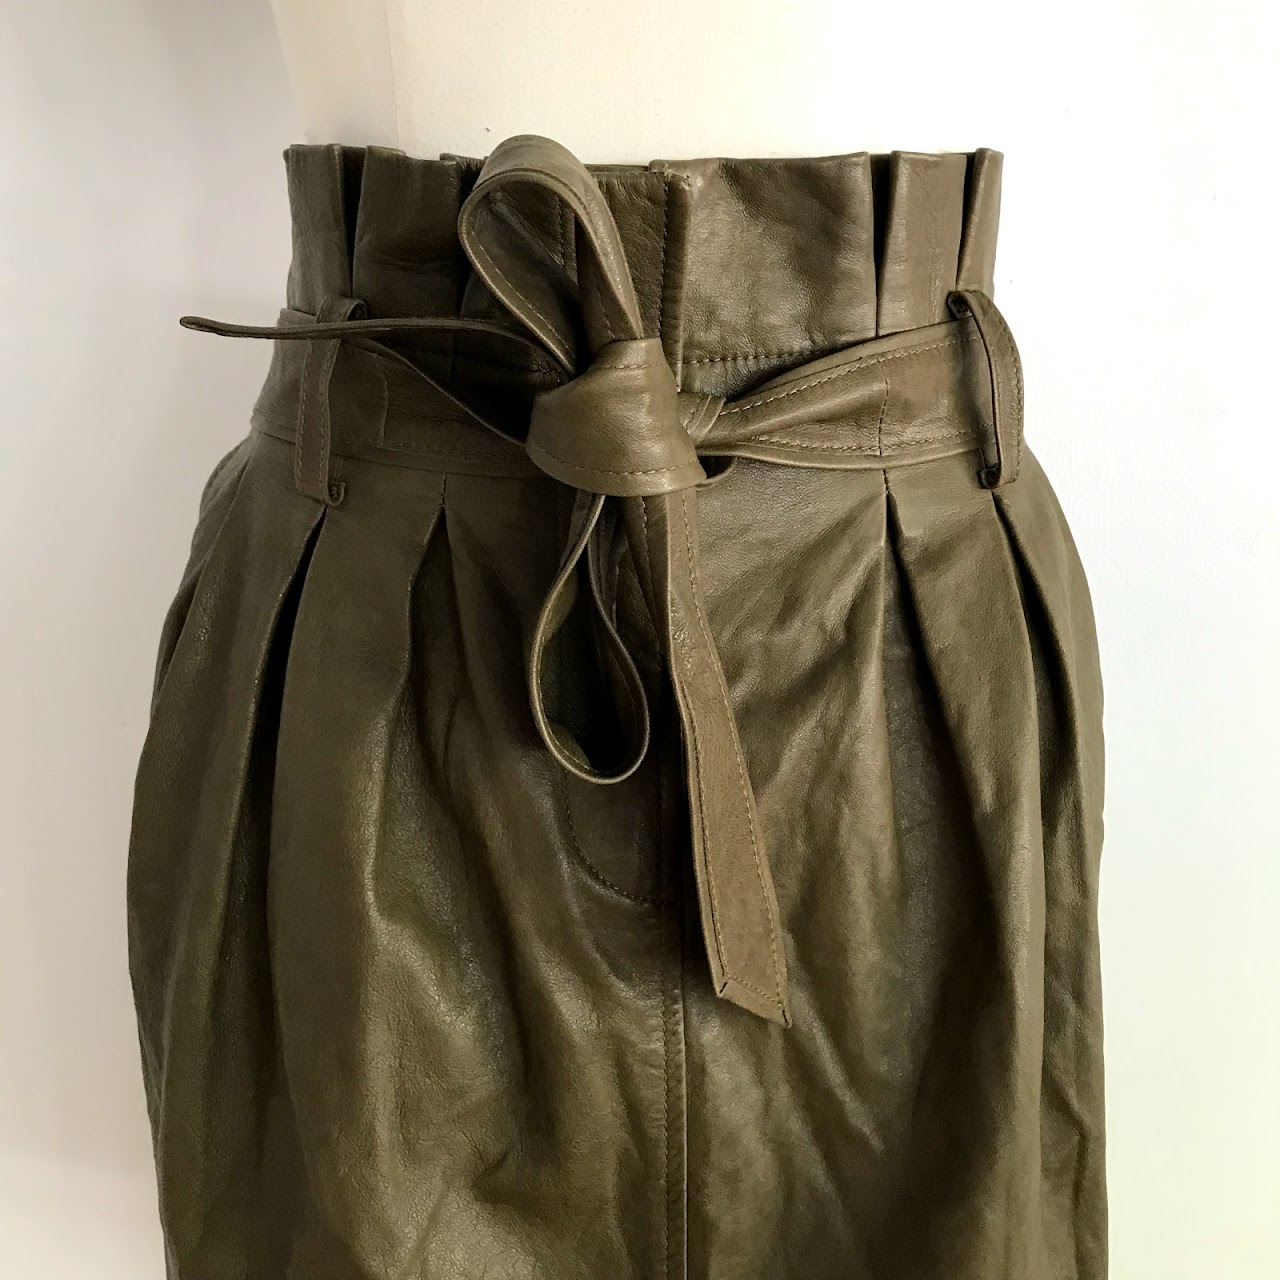 Frame  Leather Paper Bag Waist Skirt